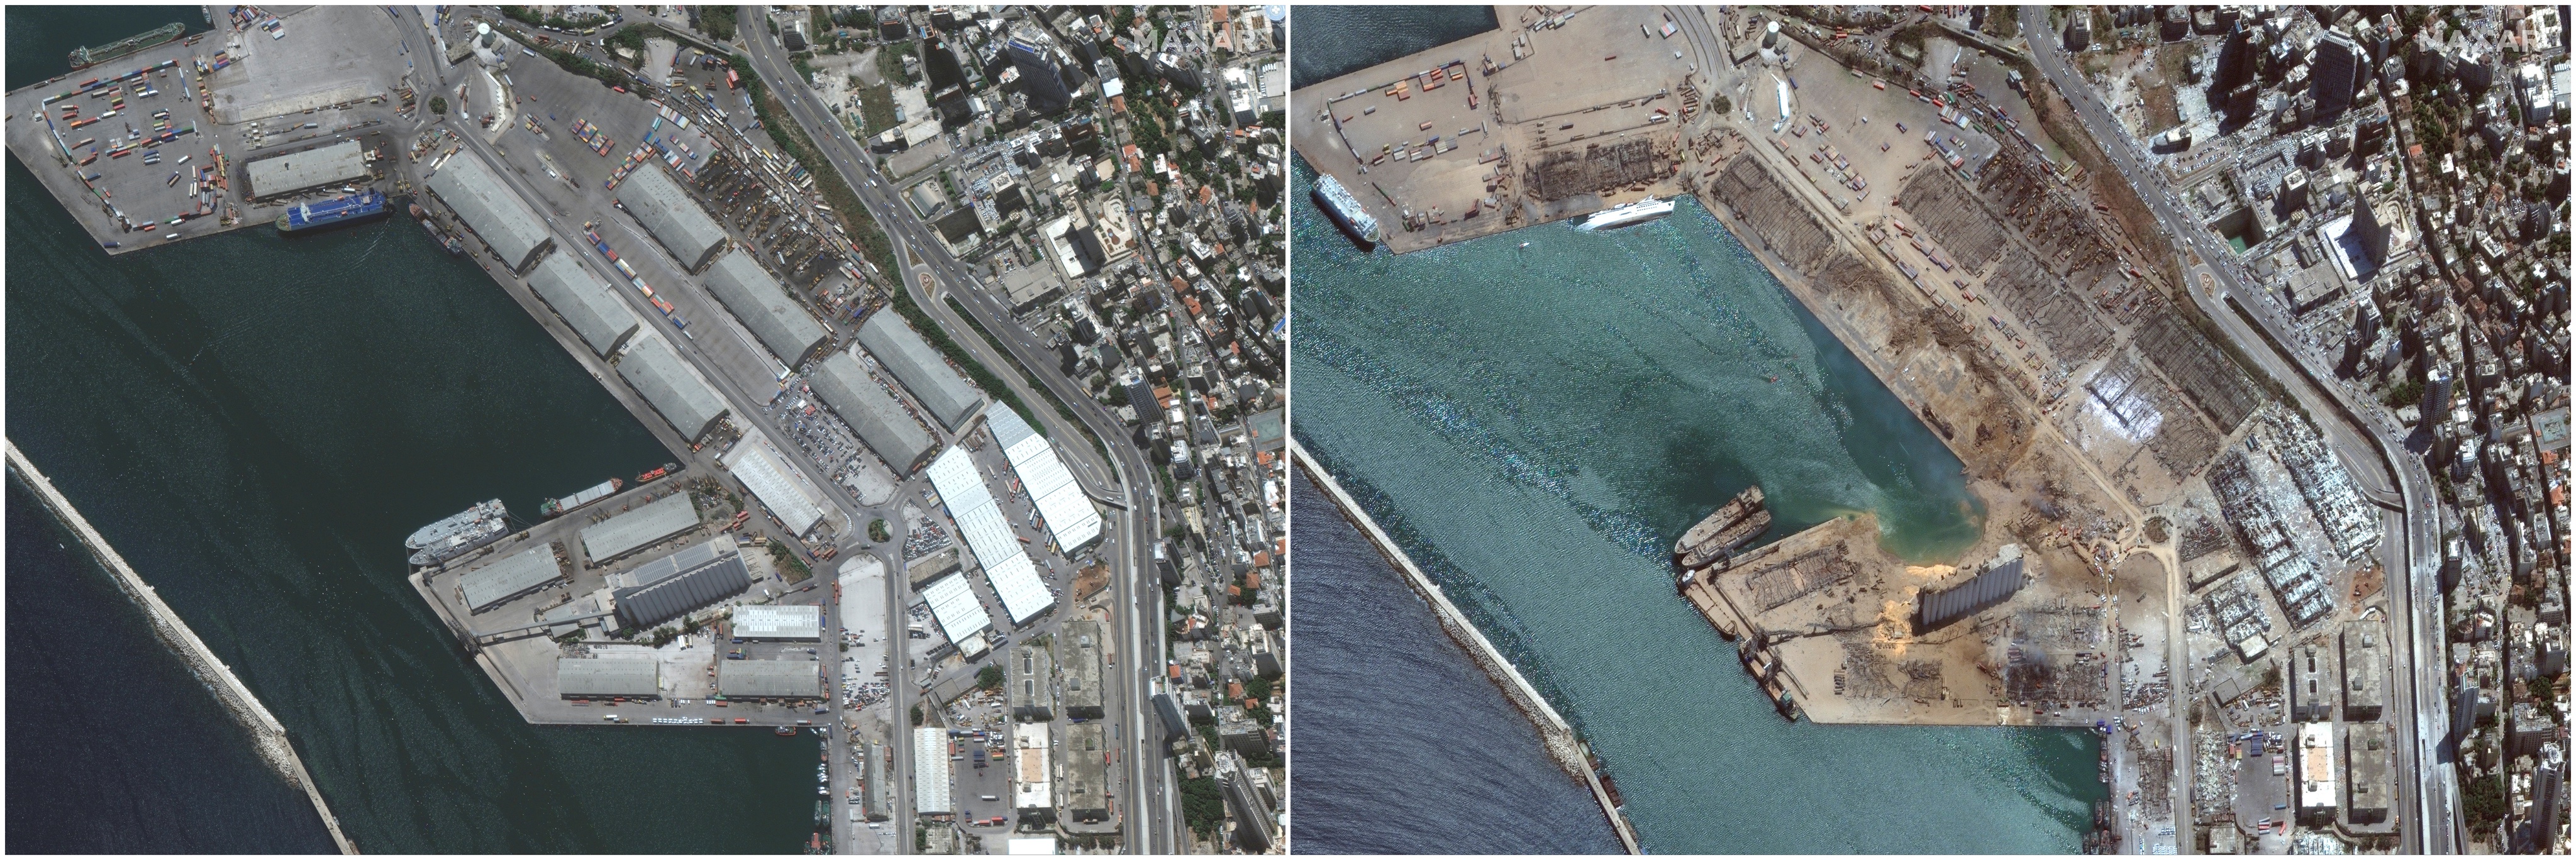 صورة من الأقمار الصناعية لميناء بيروت قبل وبعد الانفجار الضخم تظهر حجم الدمار الذي حدث.jpg